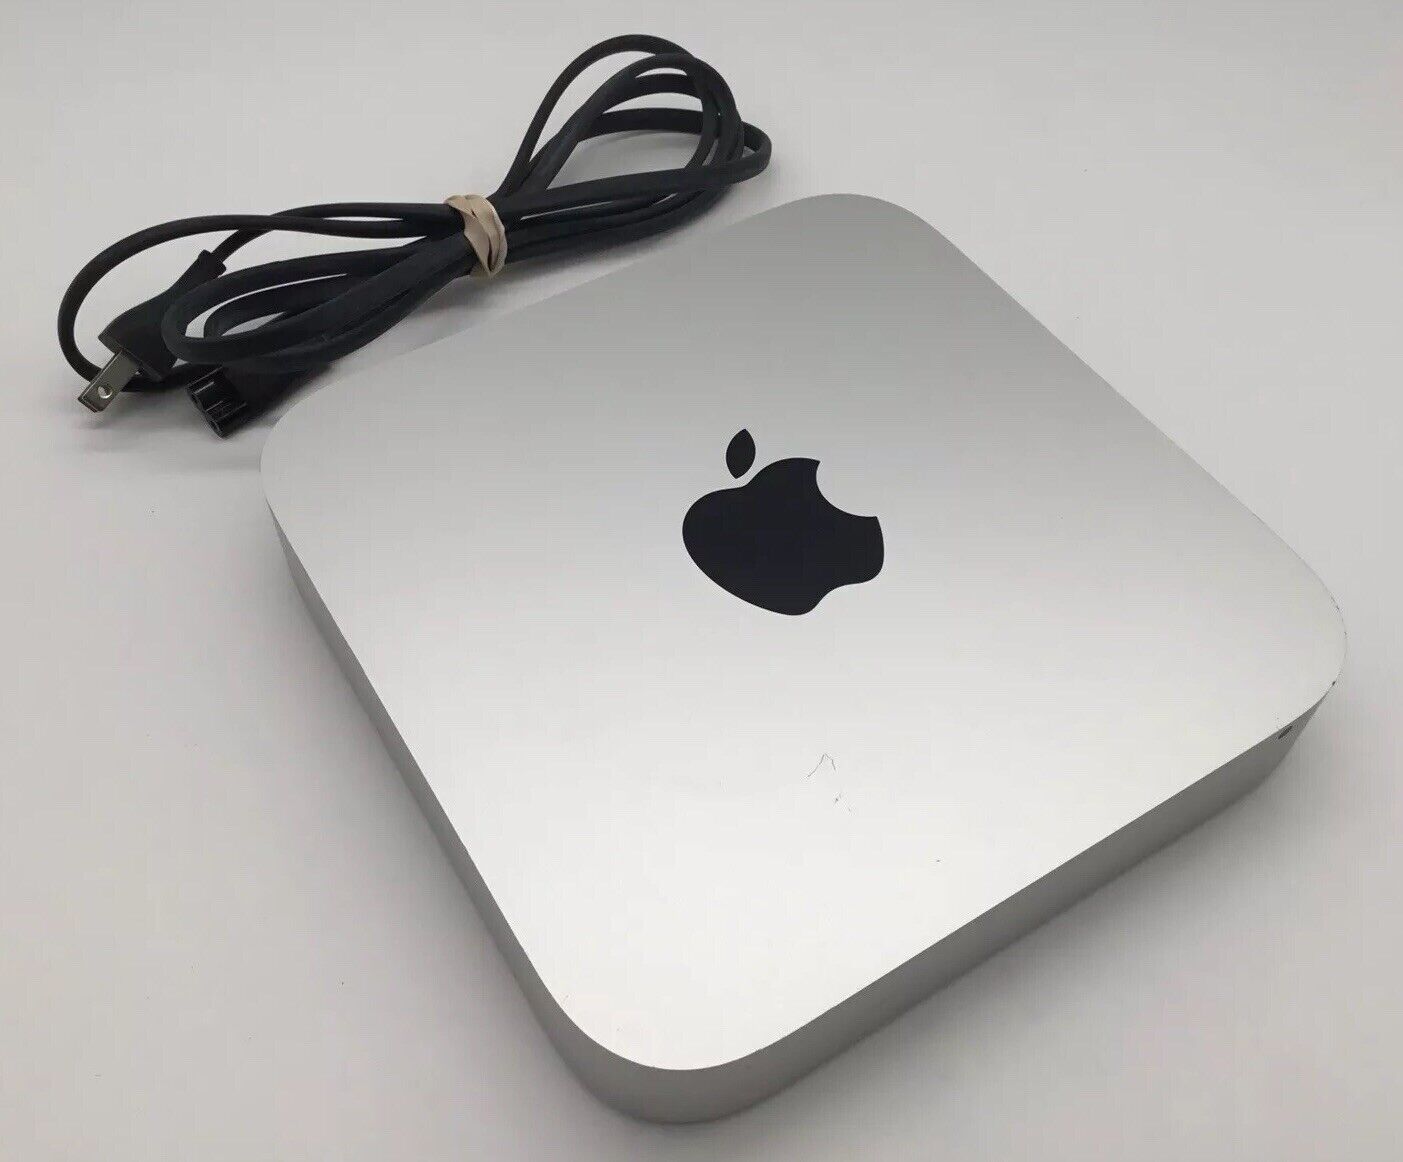 Apple Mac Mini 7,1 | 2014 - i5-4260U @ 1.40GHz 8GB RAM 120GB SSD - MGEM2LL/A